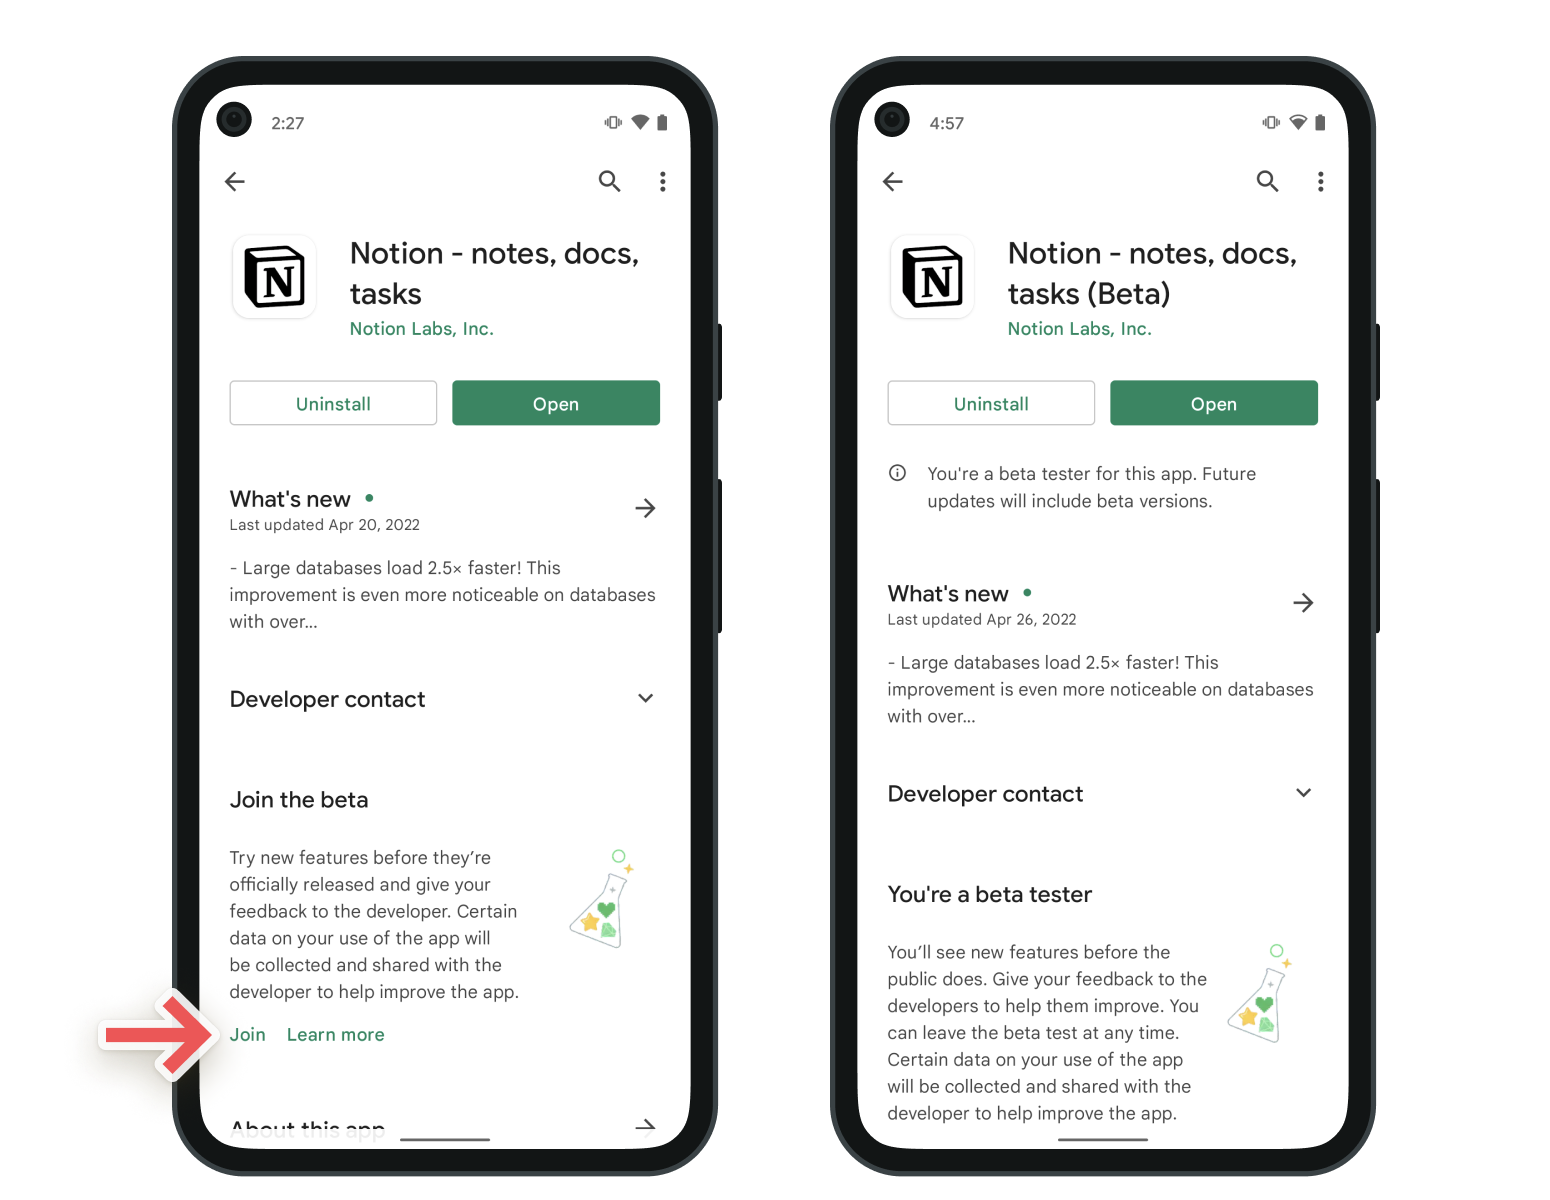 Capturas de tela que mostram como usar o TestFlight para se cadastrar no programa beta de teste do Notion para Android na Google Play Store.